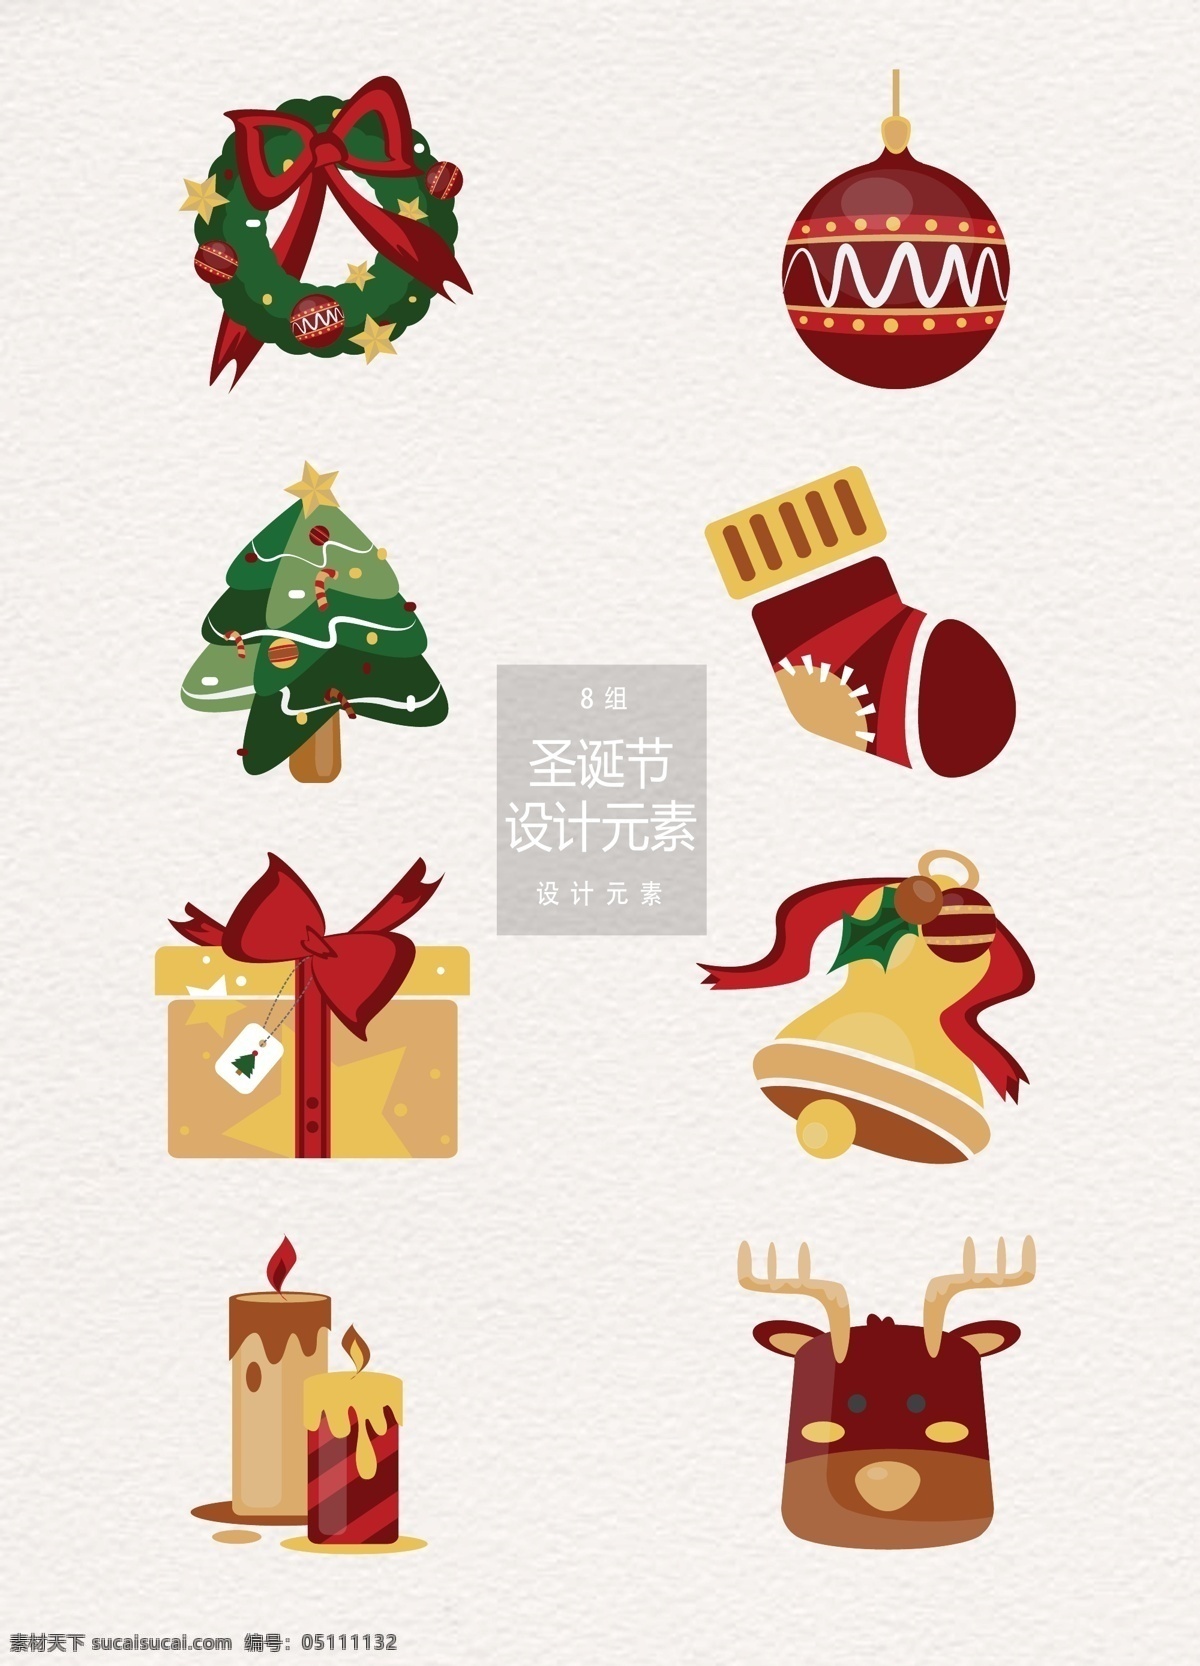 圣诞节 矢量 装饰设计 元素 袜子 礼物 礼物盒 圣诞树 圣诞 驯鹿 麋鹿 蜡烛 圣诞袜 圣诞球 铃铛